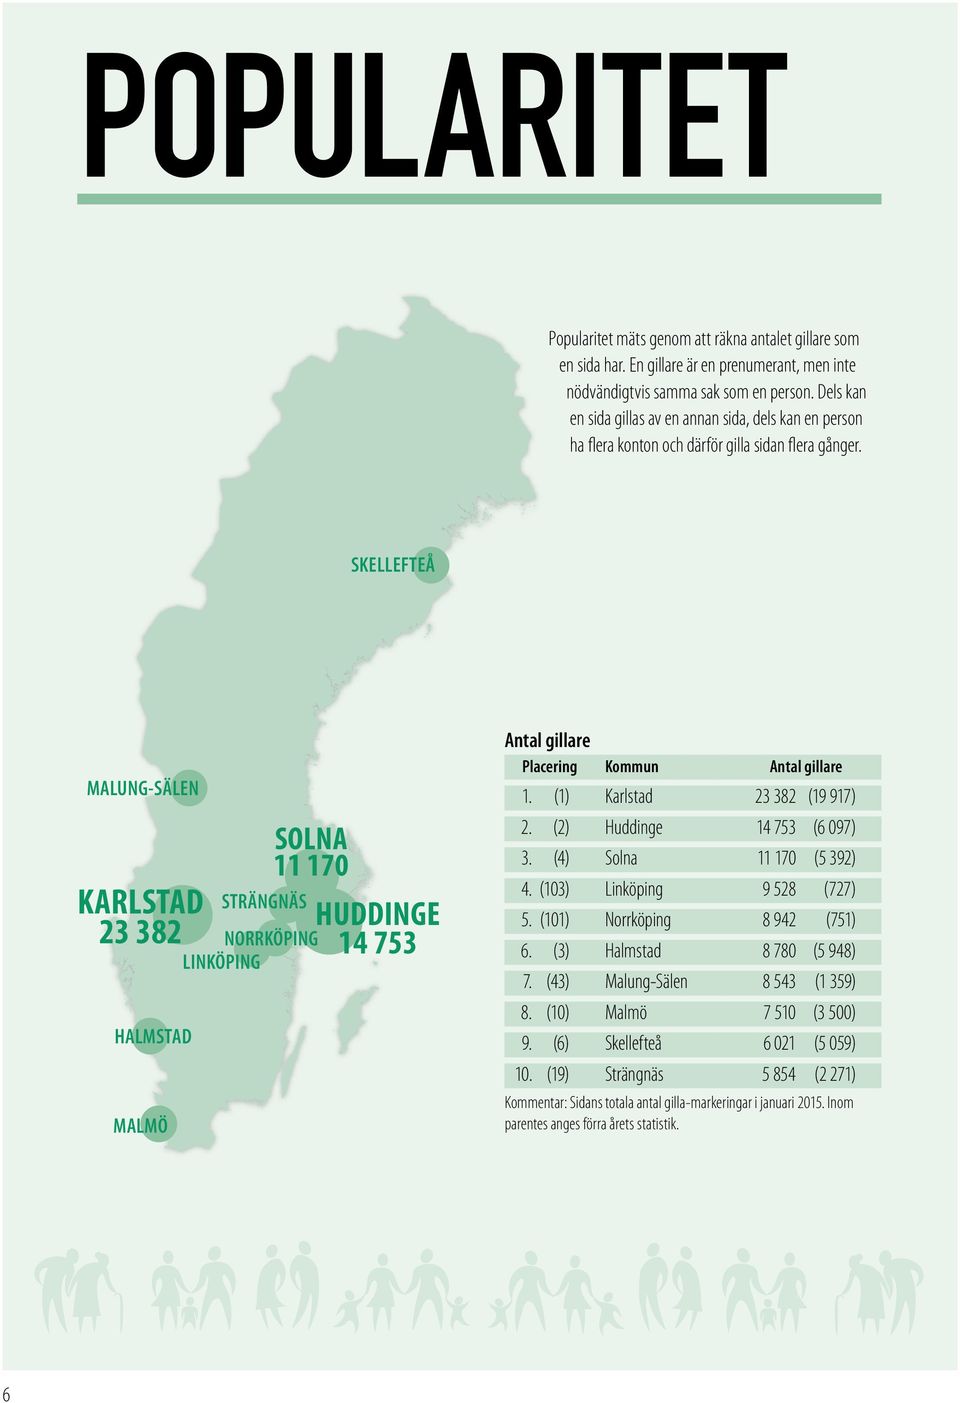 (42) Östersund 3 027 (531) Kommentar: Visar antalet nya gilla-markeringar under 2014. Förra årets siffror inom parentes. Störst procentuell ökning Placering Kommun Ökning 1.